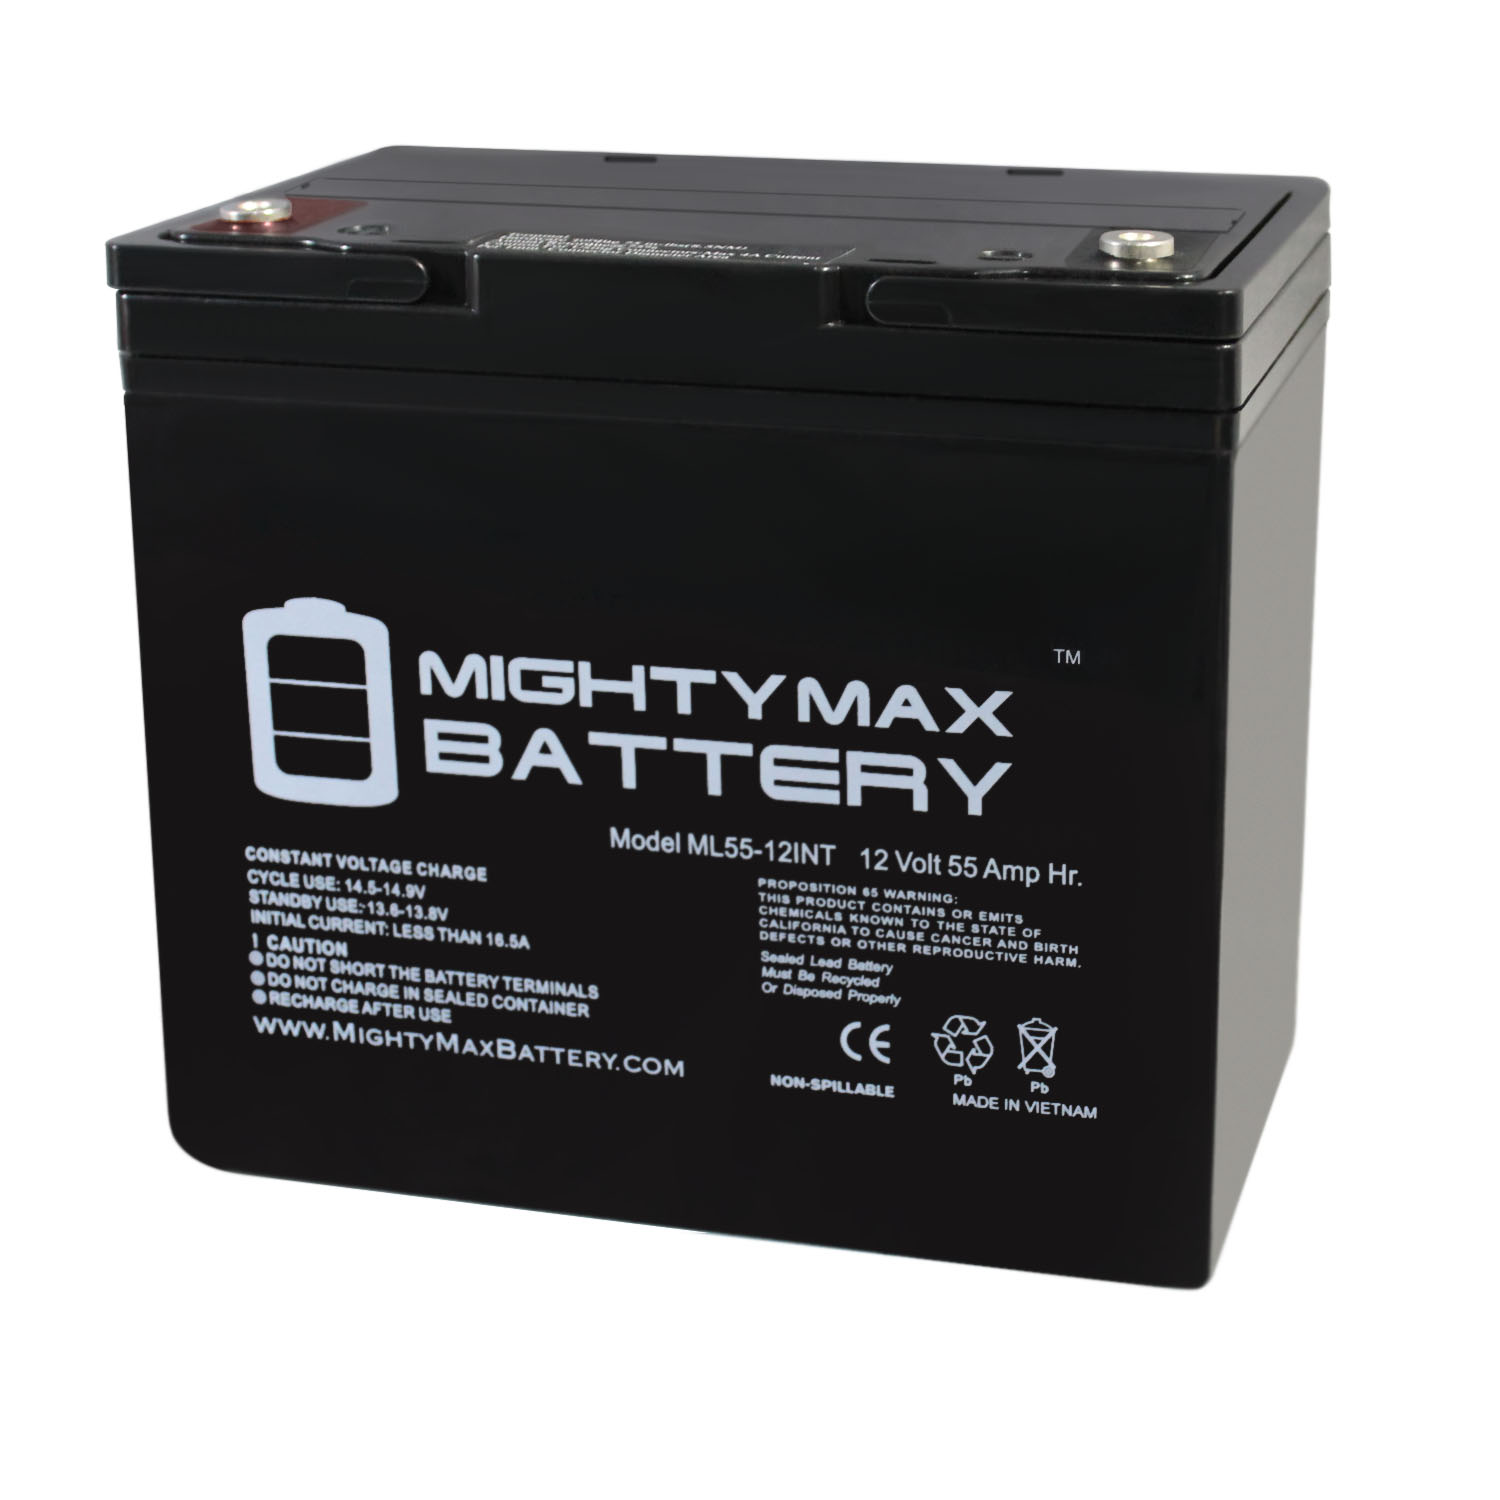 BATERIA VOLTHOR VU60 12V 60AH 550A - Recicla Baterias